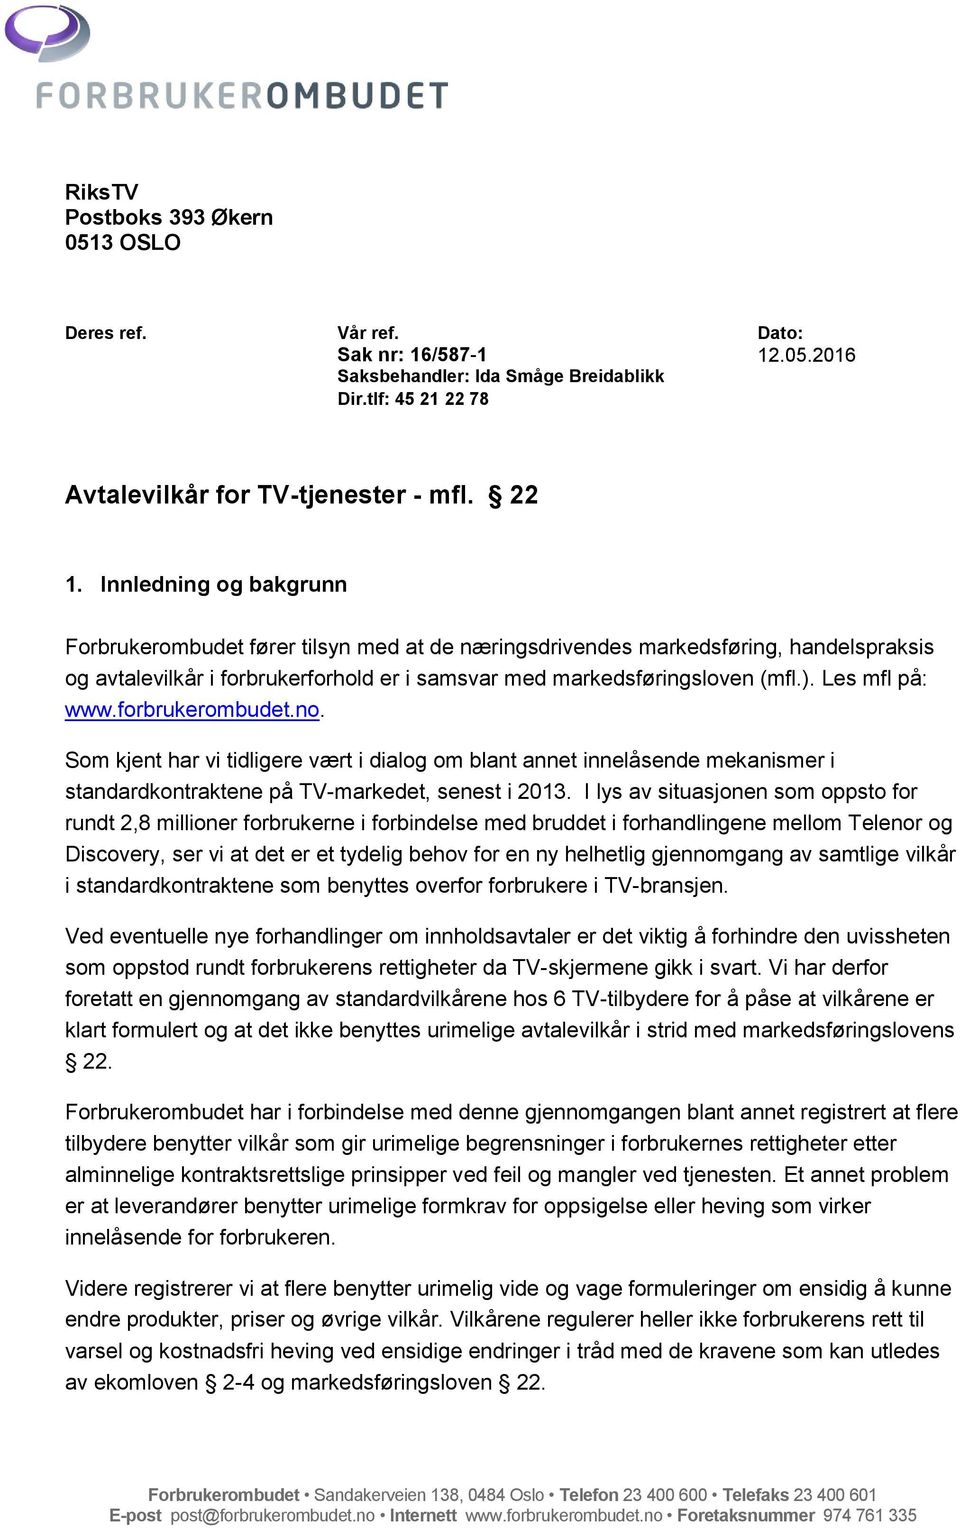 Les mfl på: www.forbrukerombudet.no. Som kjent har vi tidligere vært i dialog om blant annet innelåsende mekanismer i standardkontraktene på TV-markedet, senest i 2013.